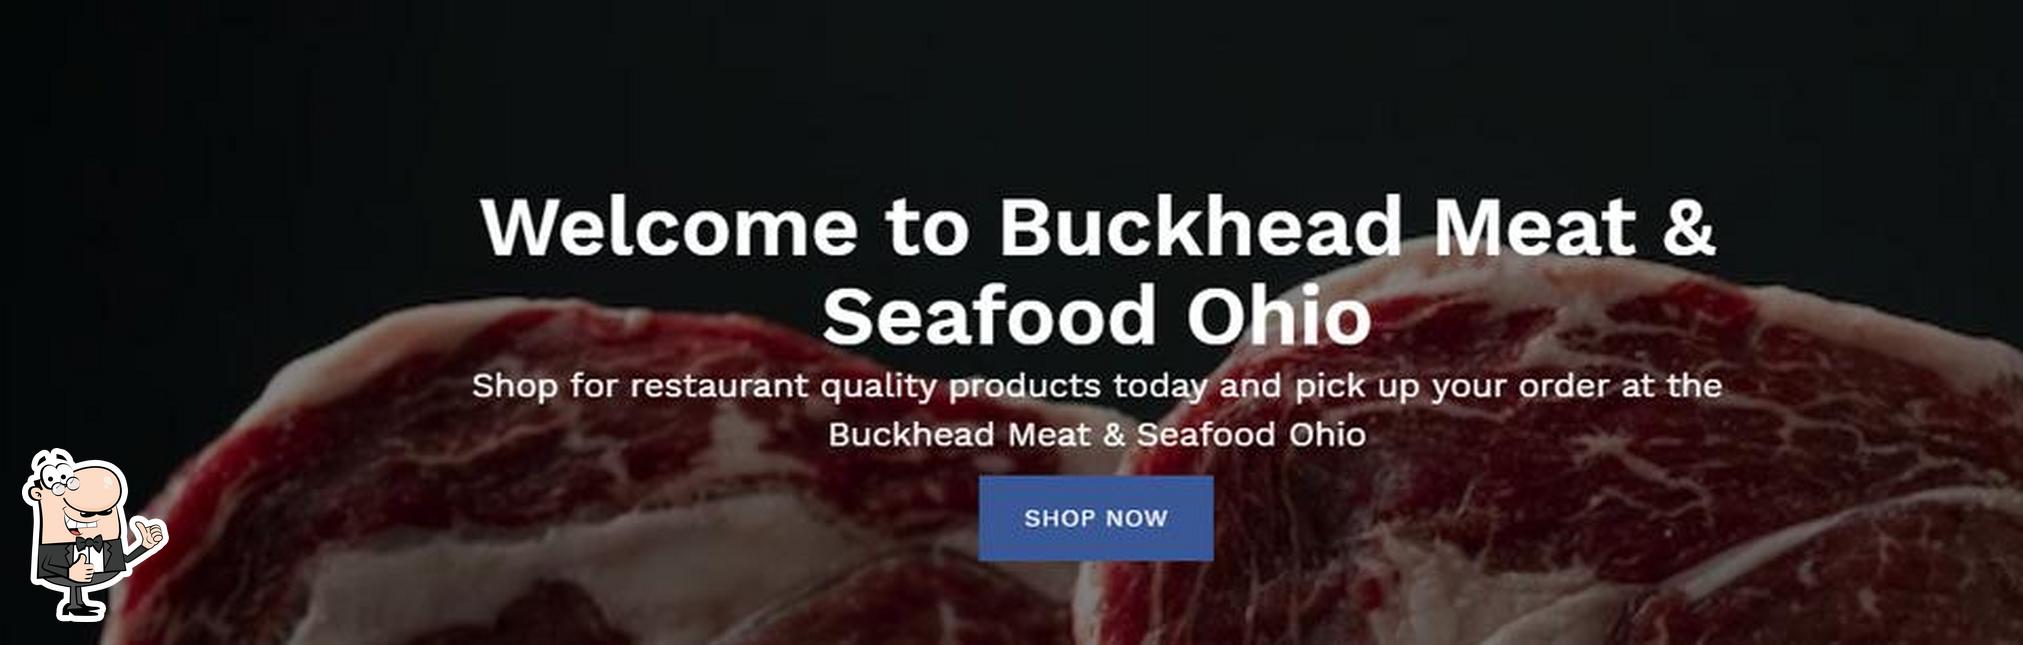 Здесь можно посмотреть изображение ресторана "Buckhead Meat & Seafood of Ohio"